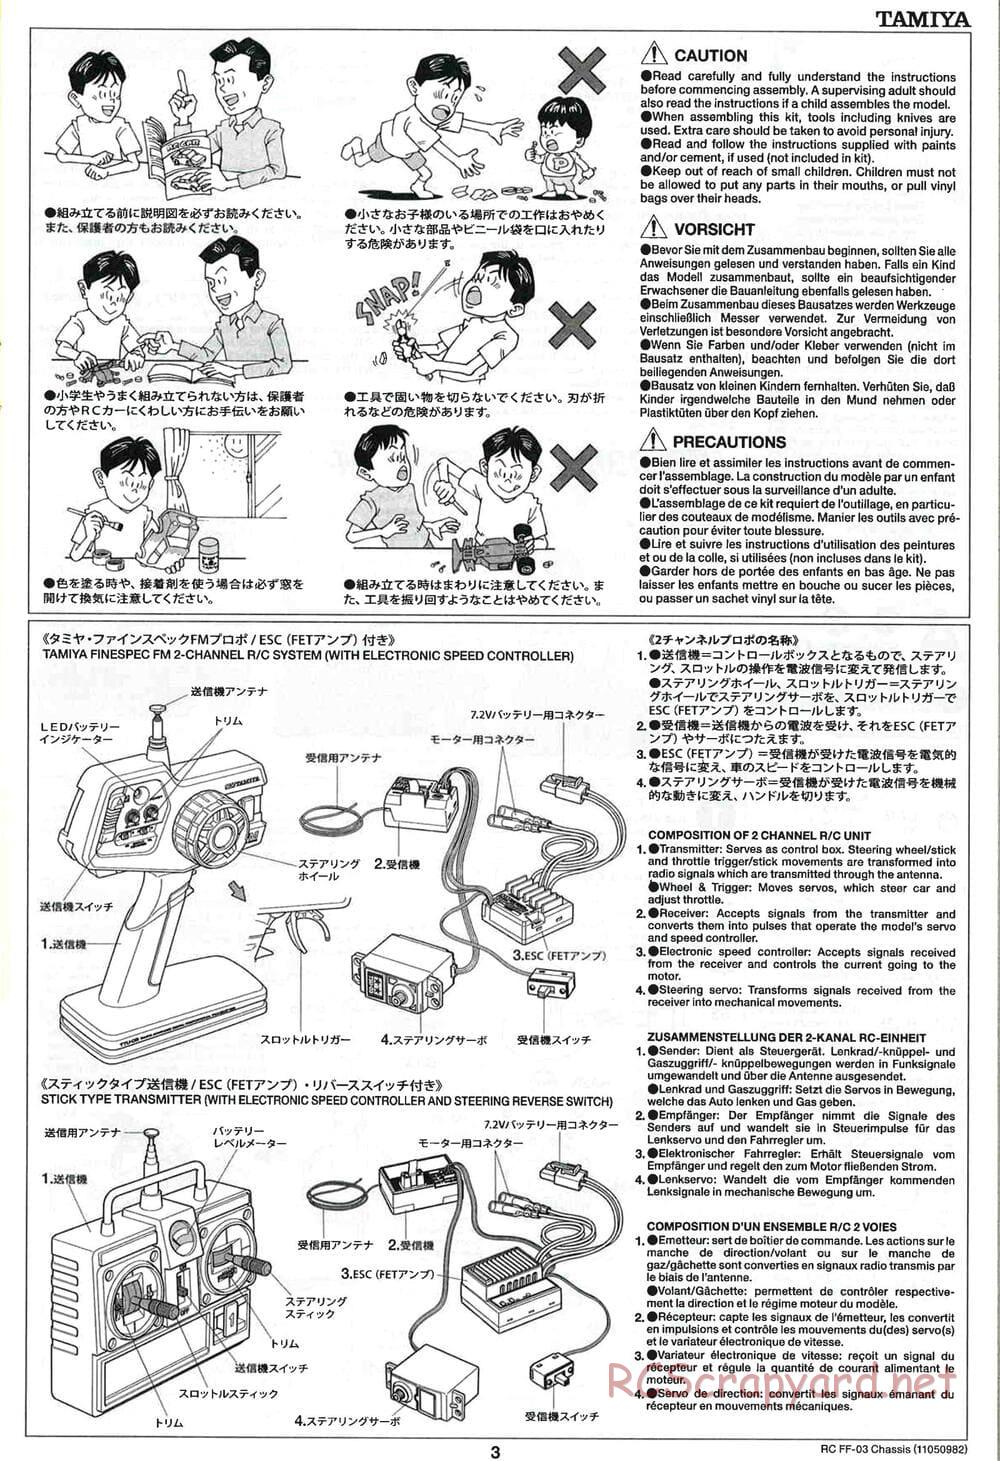 Tamiya - Honda Accord Aero Custom - FF-03 Chassis - Manual - Page 3